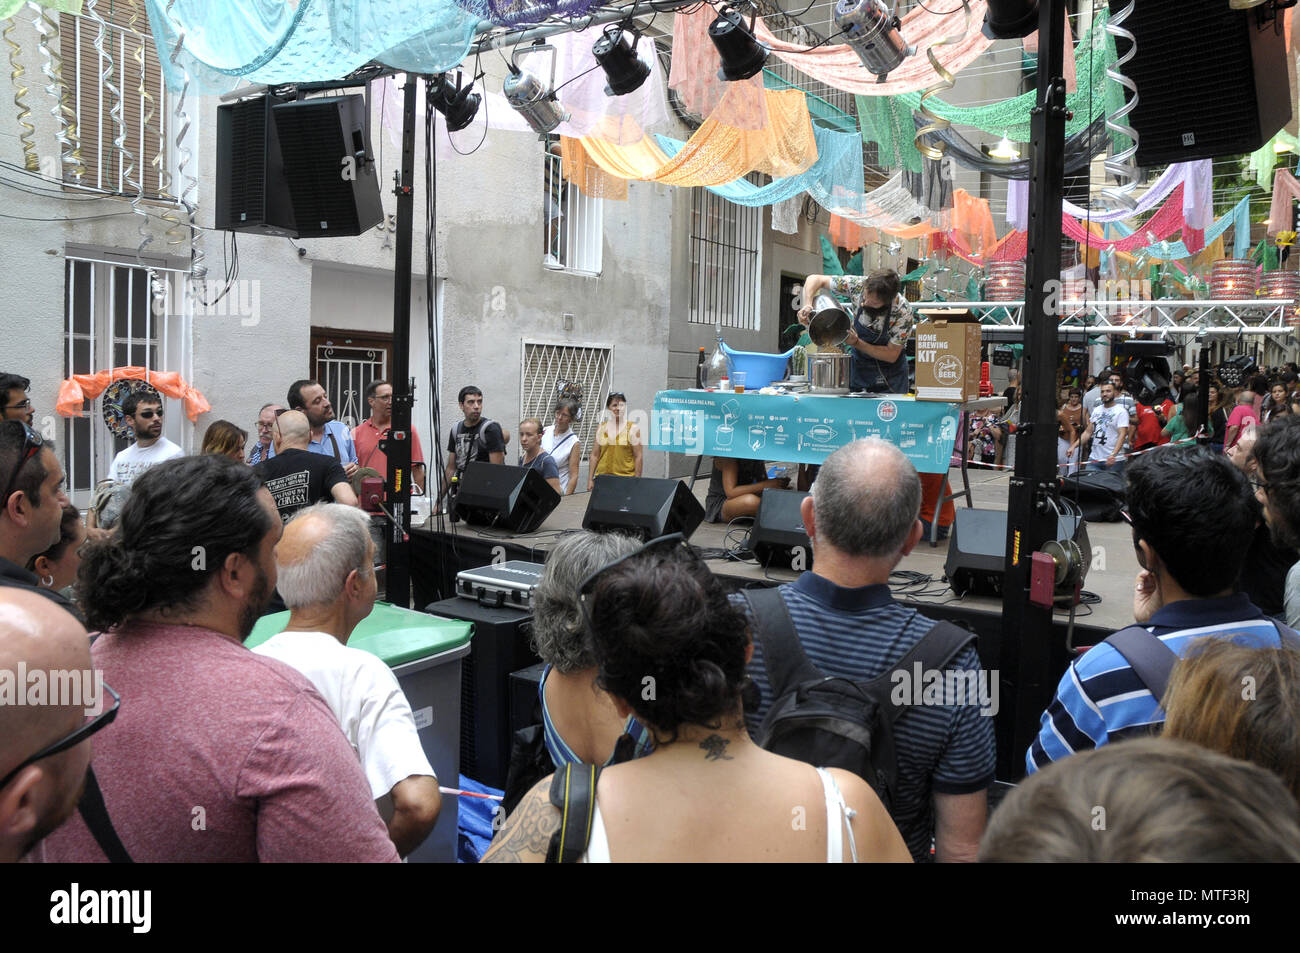 STRETS dekoriert im Stadtteil Gracia SOMMER FESTIVAL IN BARCELONA, die Leute, die die verschiedenen Straßen DEKORATIONEN RUND UM GRACIA FEST. Foto: Rosmi Stockfoto